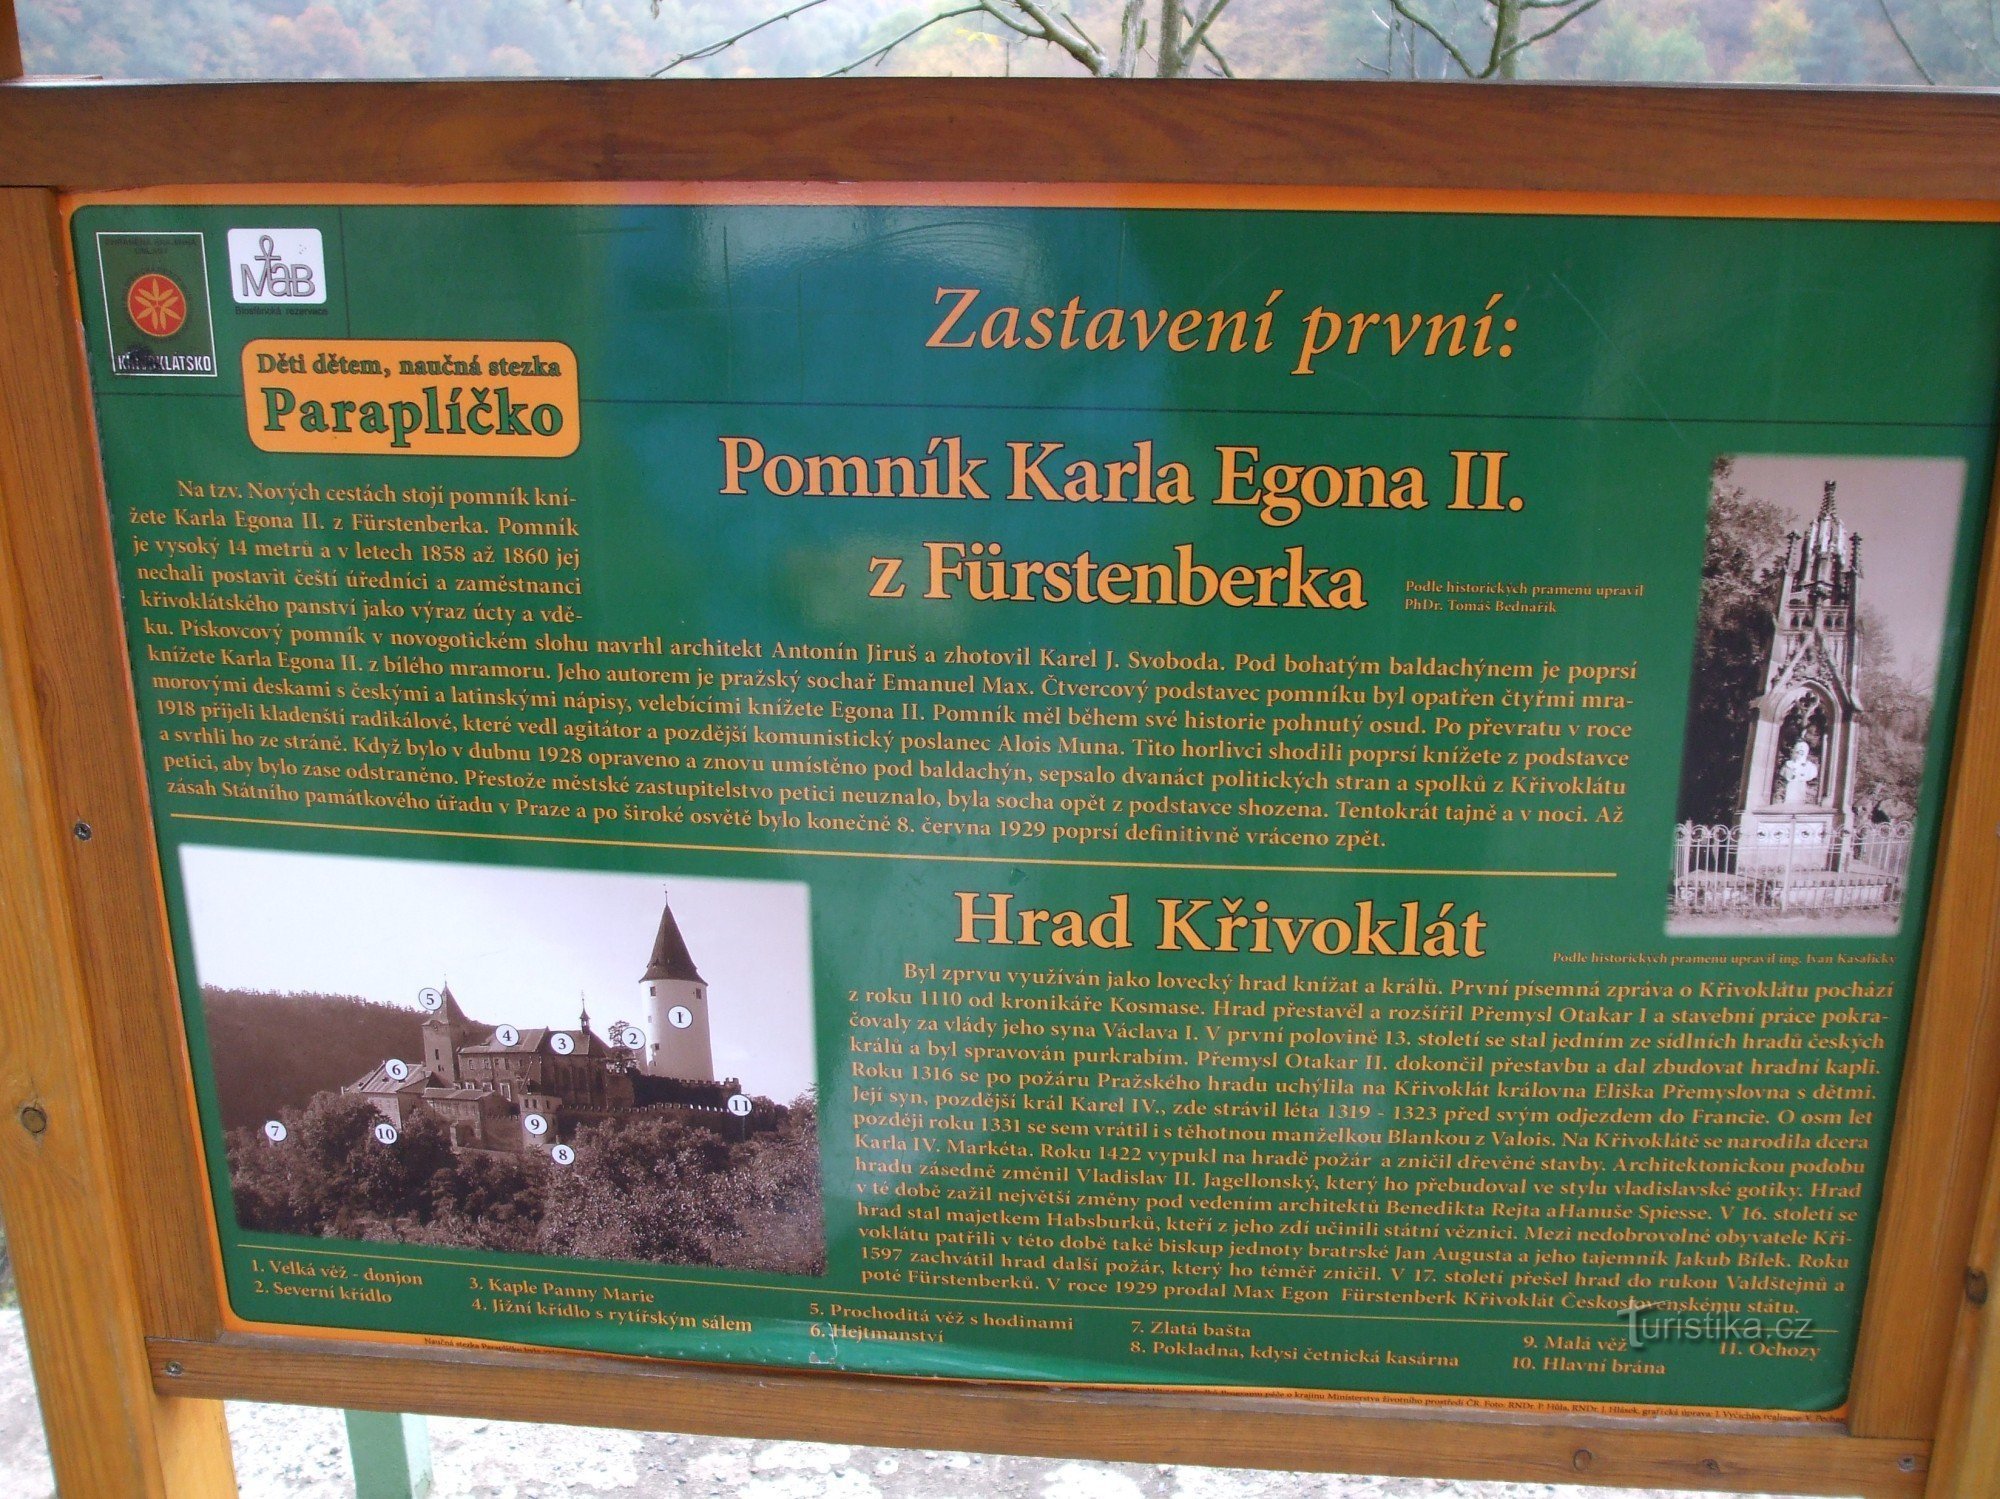 プリンス カール エゴン XNUMX 世の記念碑。 クシヴォクラートのフュルステンベルク出身。